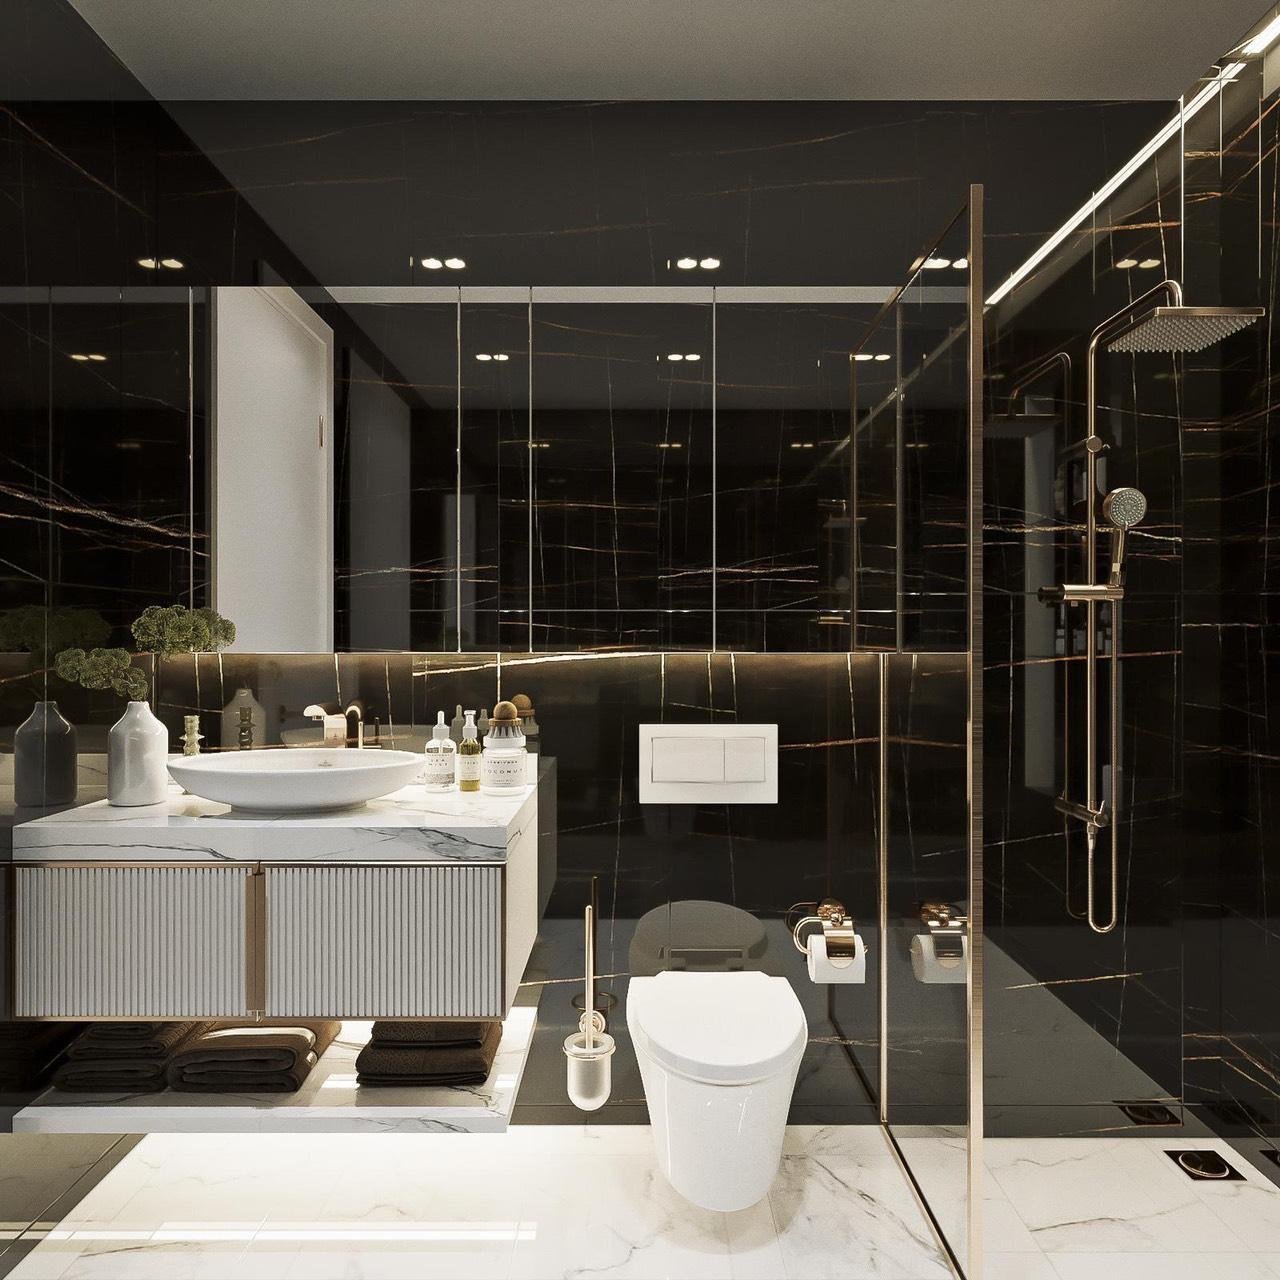 Phòng tắm, nhà vệ sinh, phong cách Hiện đại Modern, thiết kế concept nội thất, nhà phố Quận Bình Tân